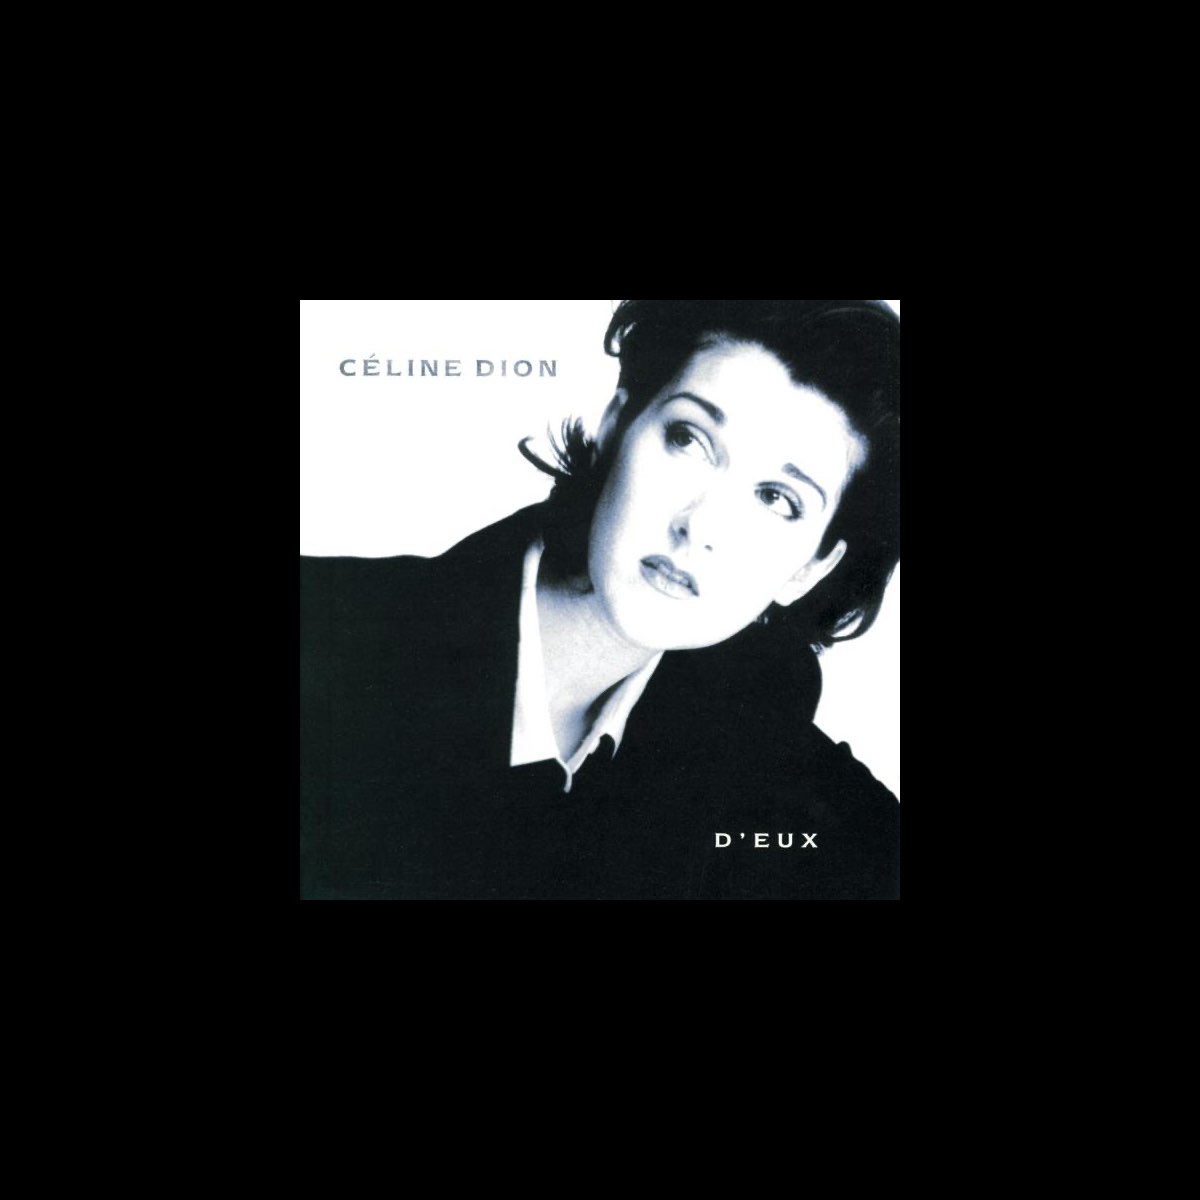 ‎D'eux - Album by Céline Dion - Apple Music